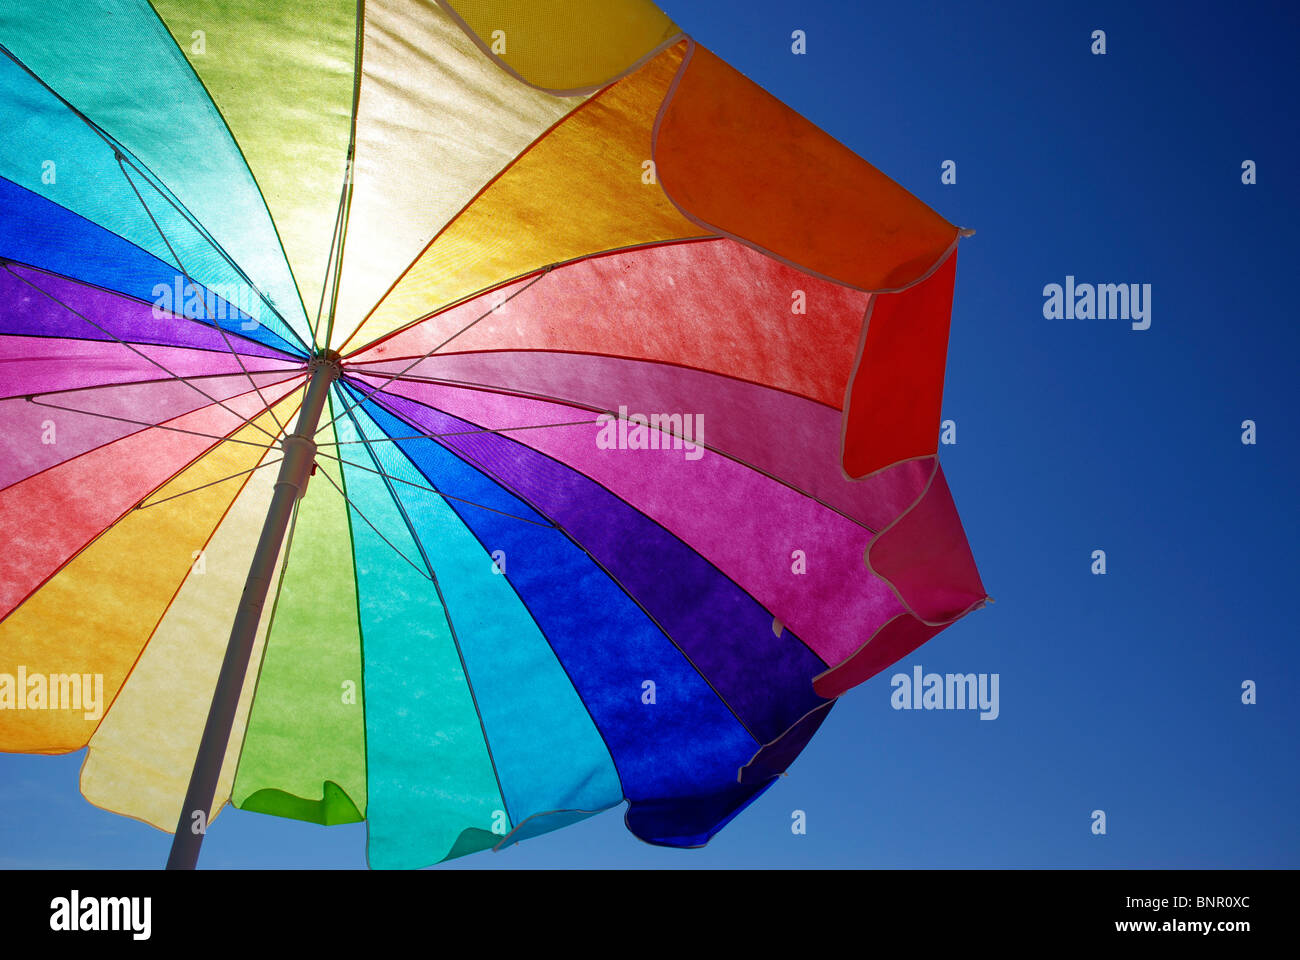 Rainbow colored sun umbrella at the beach against clear blue sky. Stock Photo